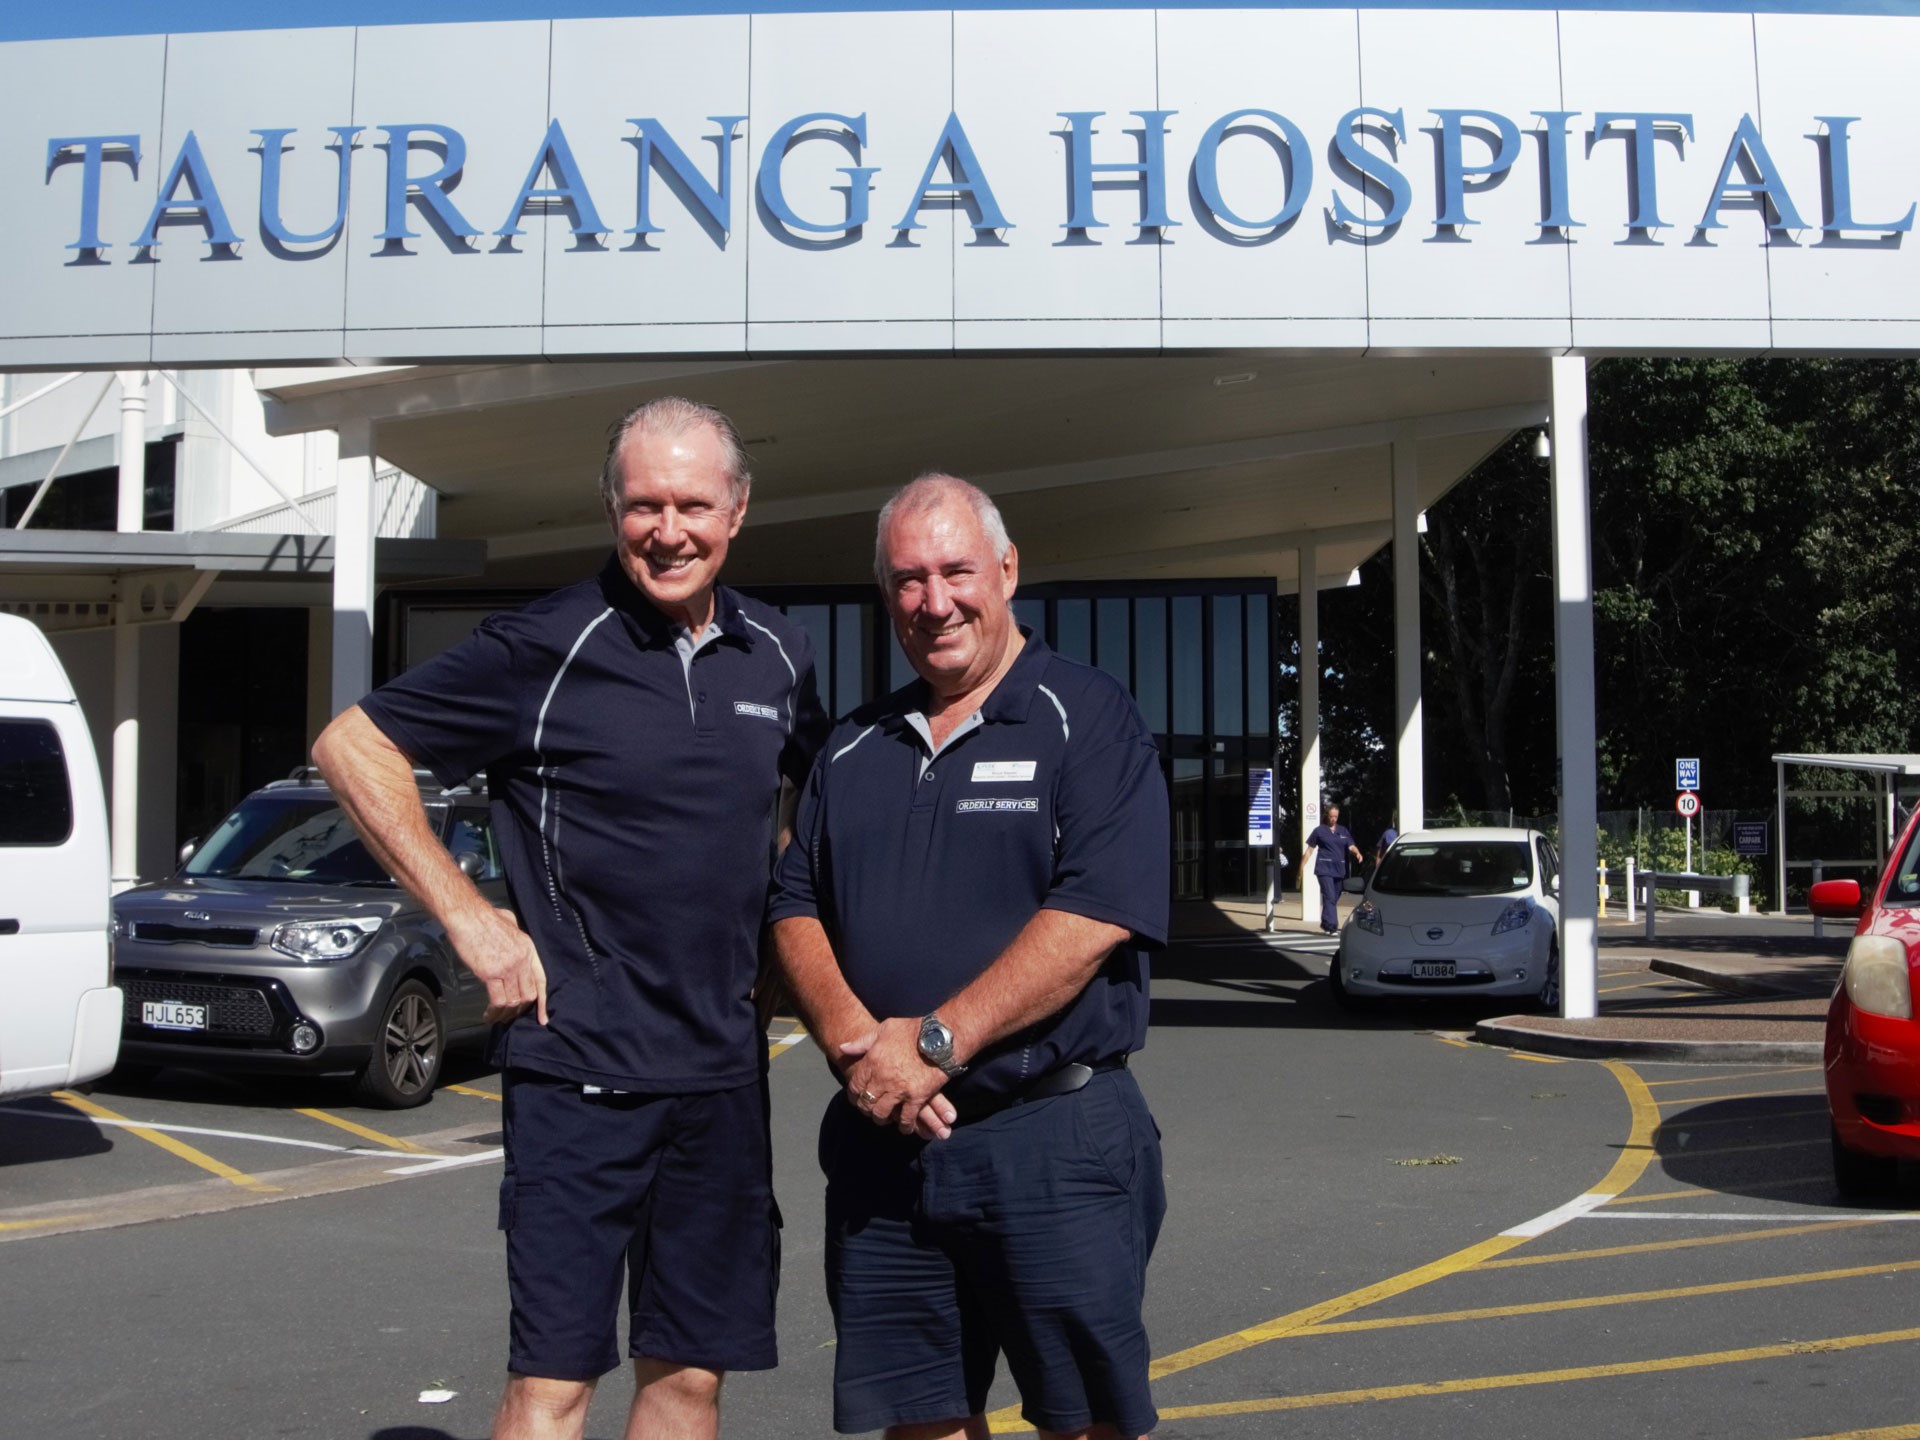 Former All Black captain joins the Tauranga Hospital Orderlies team